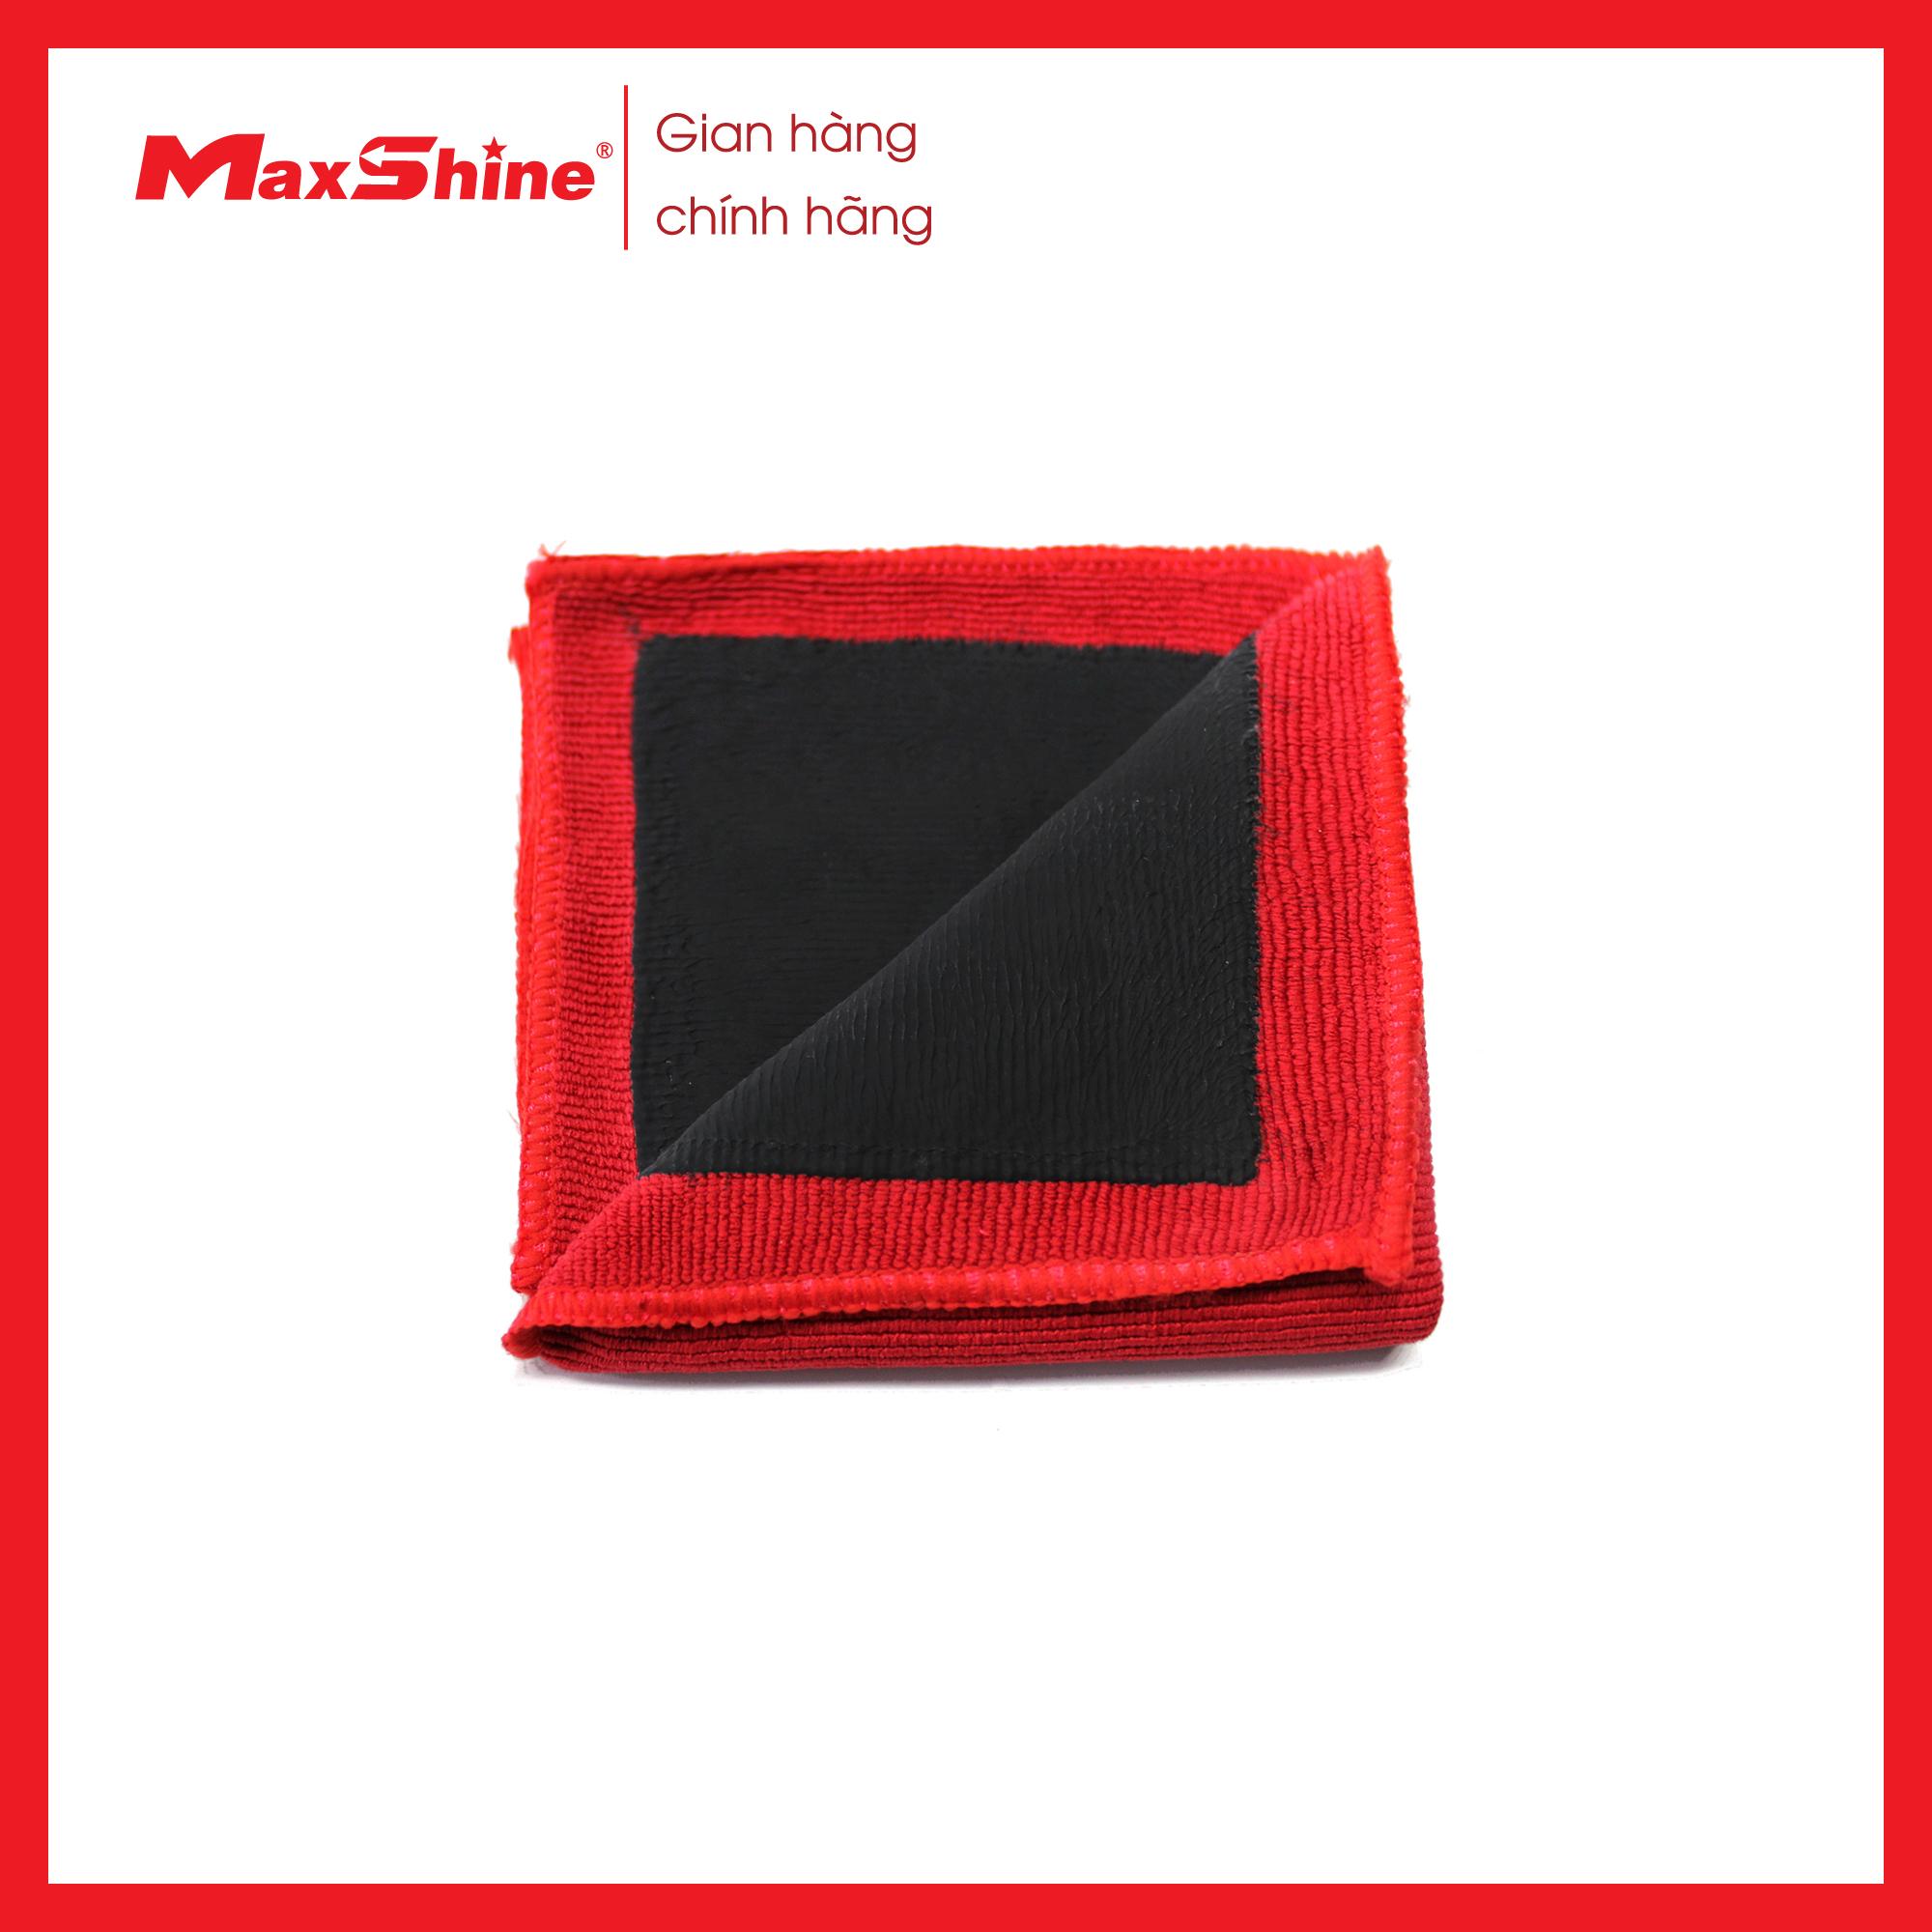 Khăn đất sét – Clay Towel – Fine Grade Maxshine 2043030R kết hợp độc đáo giữa mặt khăn sợi nhỏ màu đỏ với 1 mặt khăn đất sét